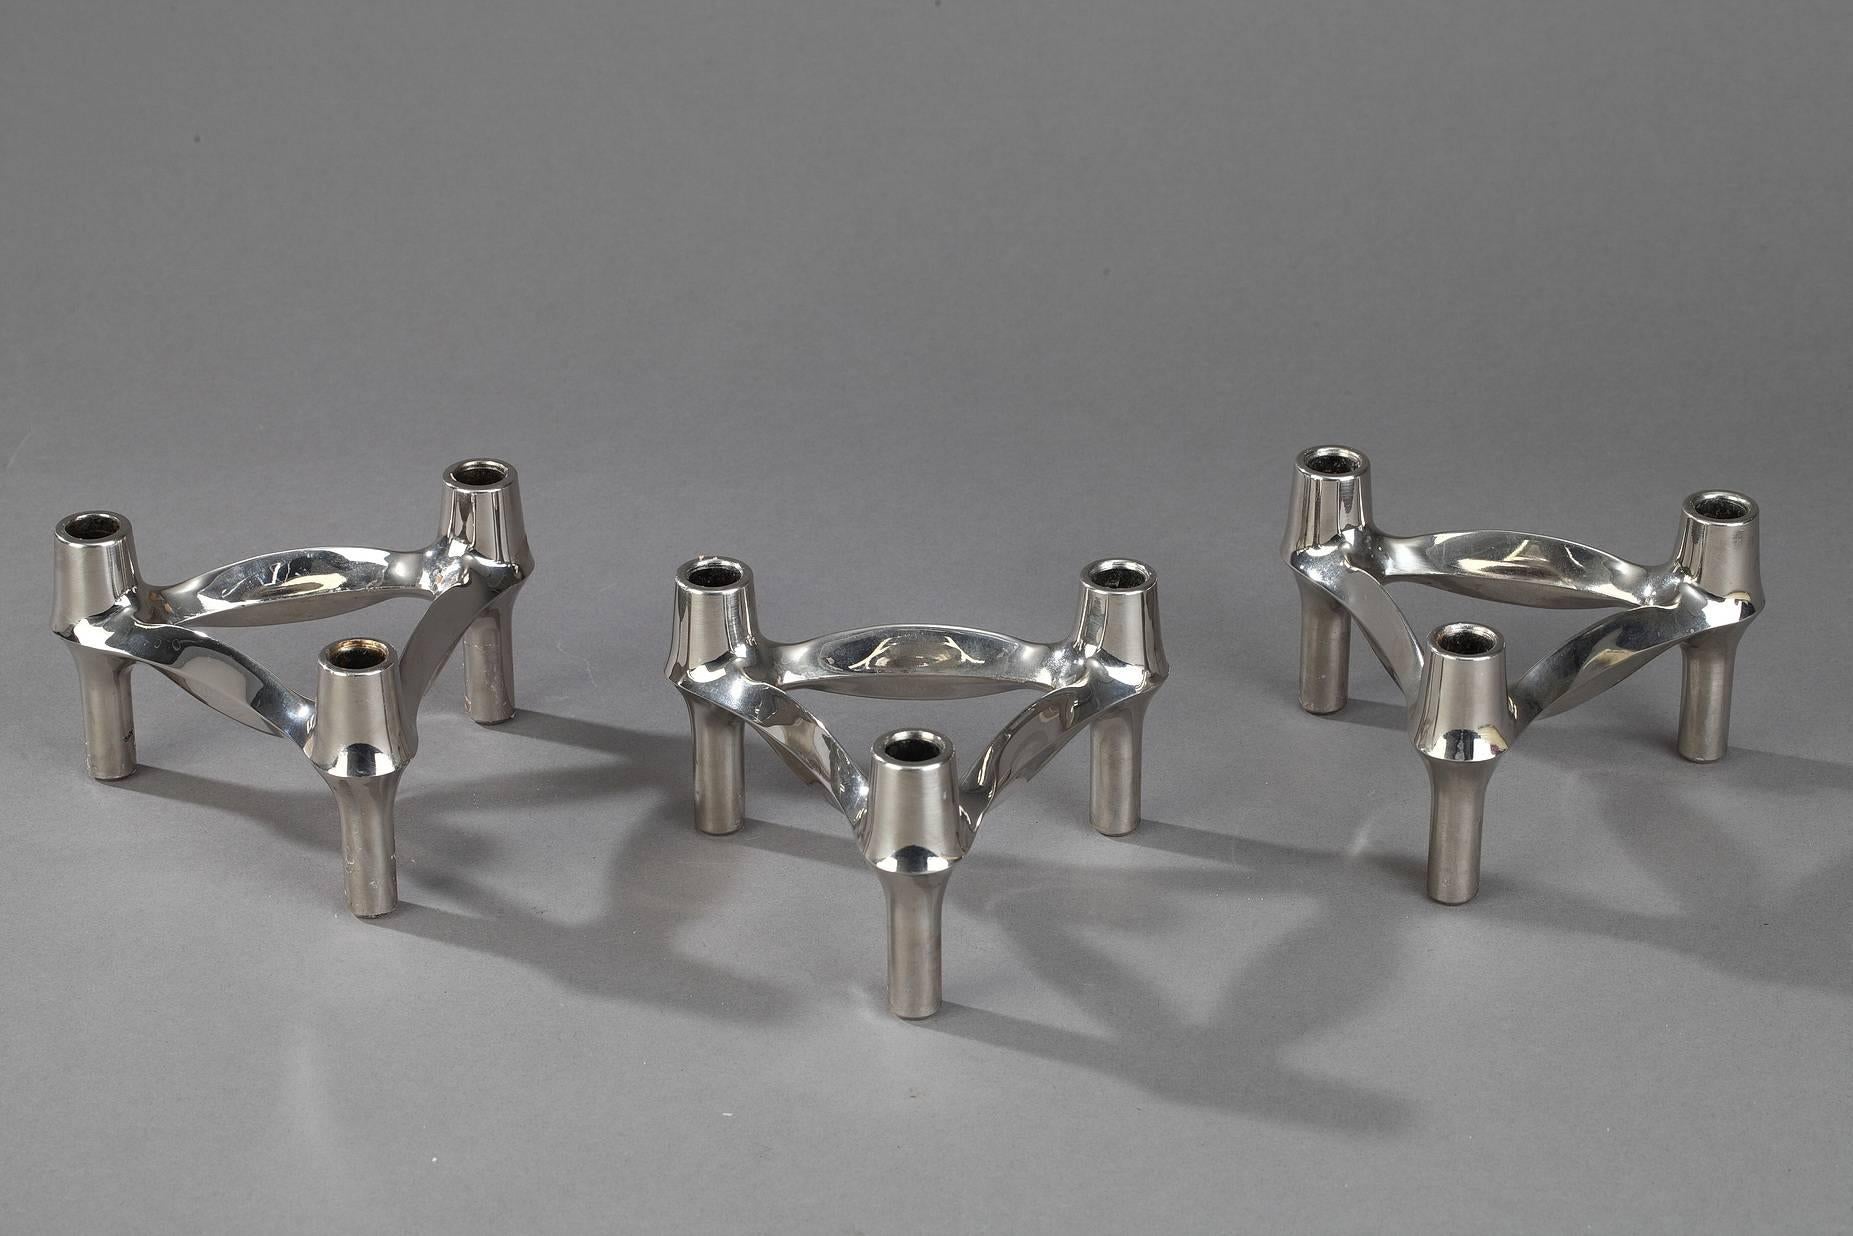 Trois chandeliers en métal chromé produits par BMF (Bayerische Metallwarenfabrik) en Allemagne dans les années 1970. Comme les chandeliers Nagel, les chandeliers BMF peuvent être utilisés individuellement ou assemblés pour créer une infinité de